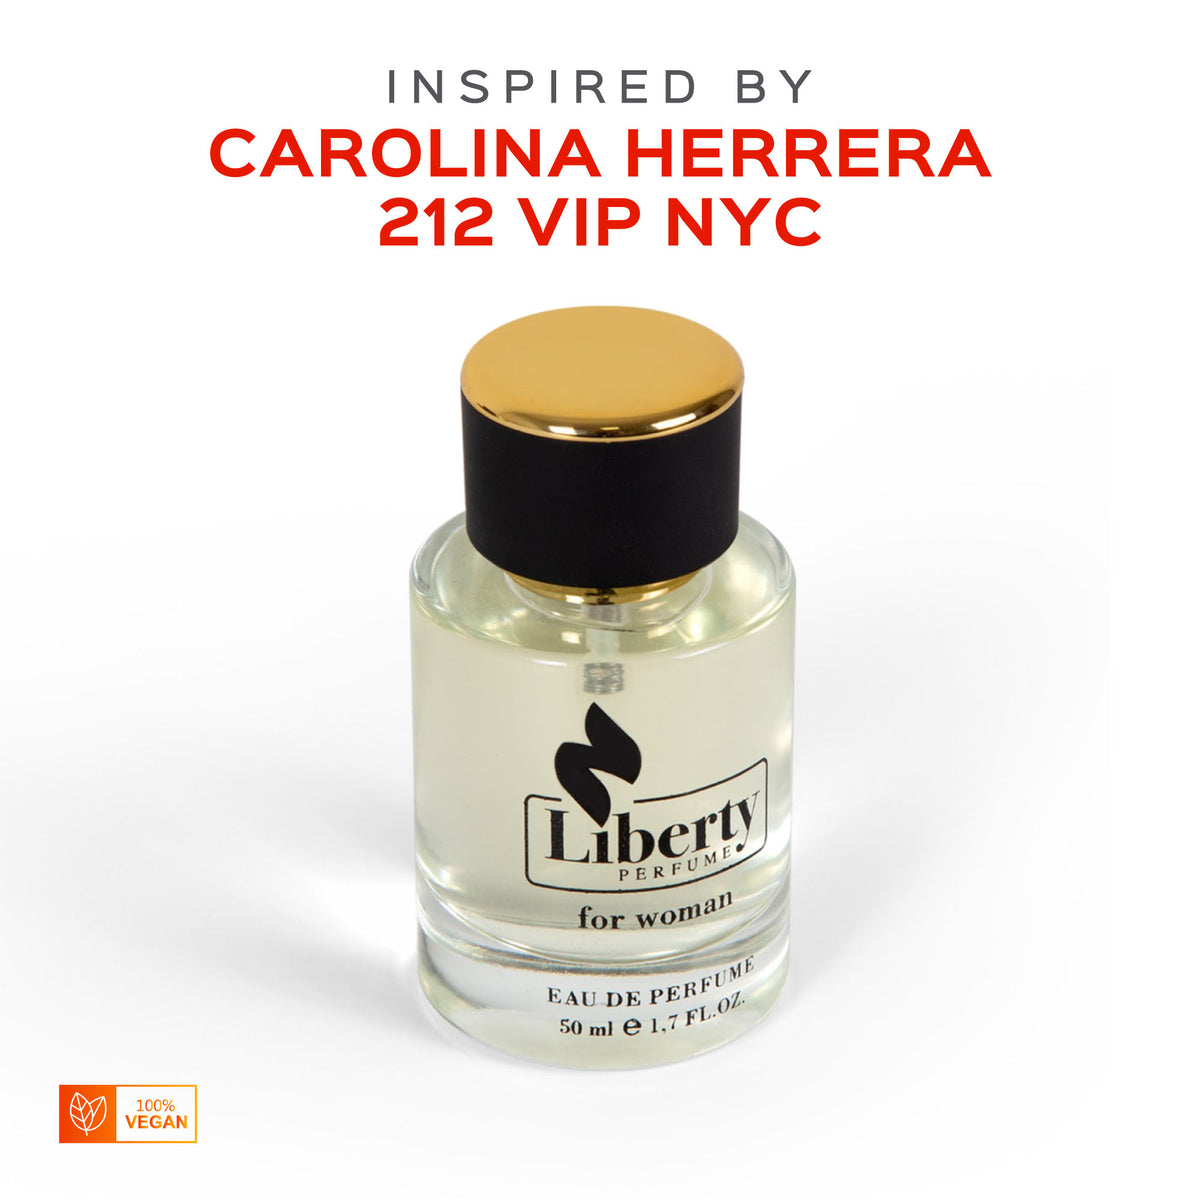 W18 for Women Perfume - Carolina – Inspired Vip 212 Herrera by Liberty $39.99